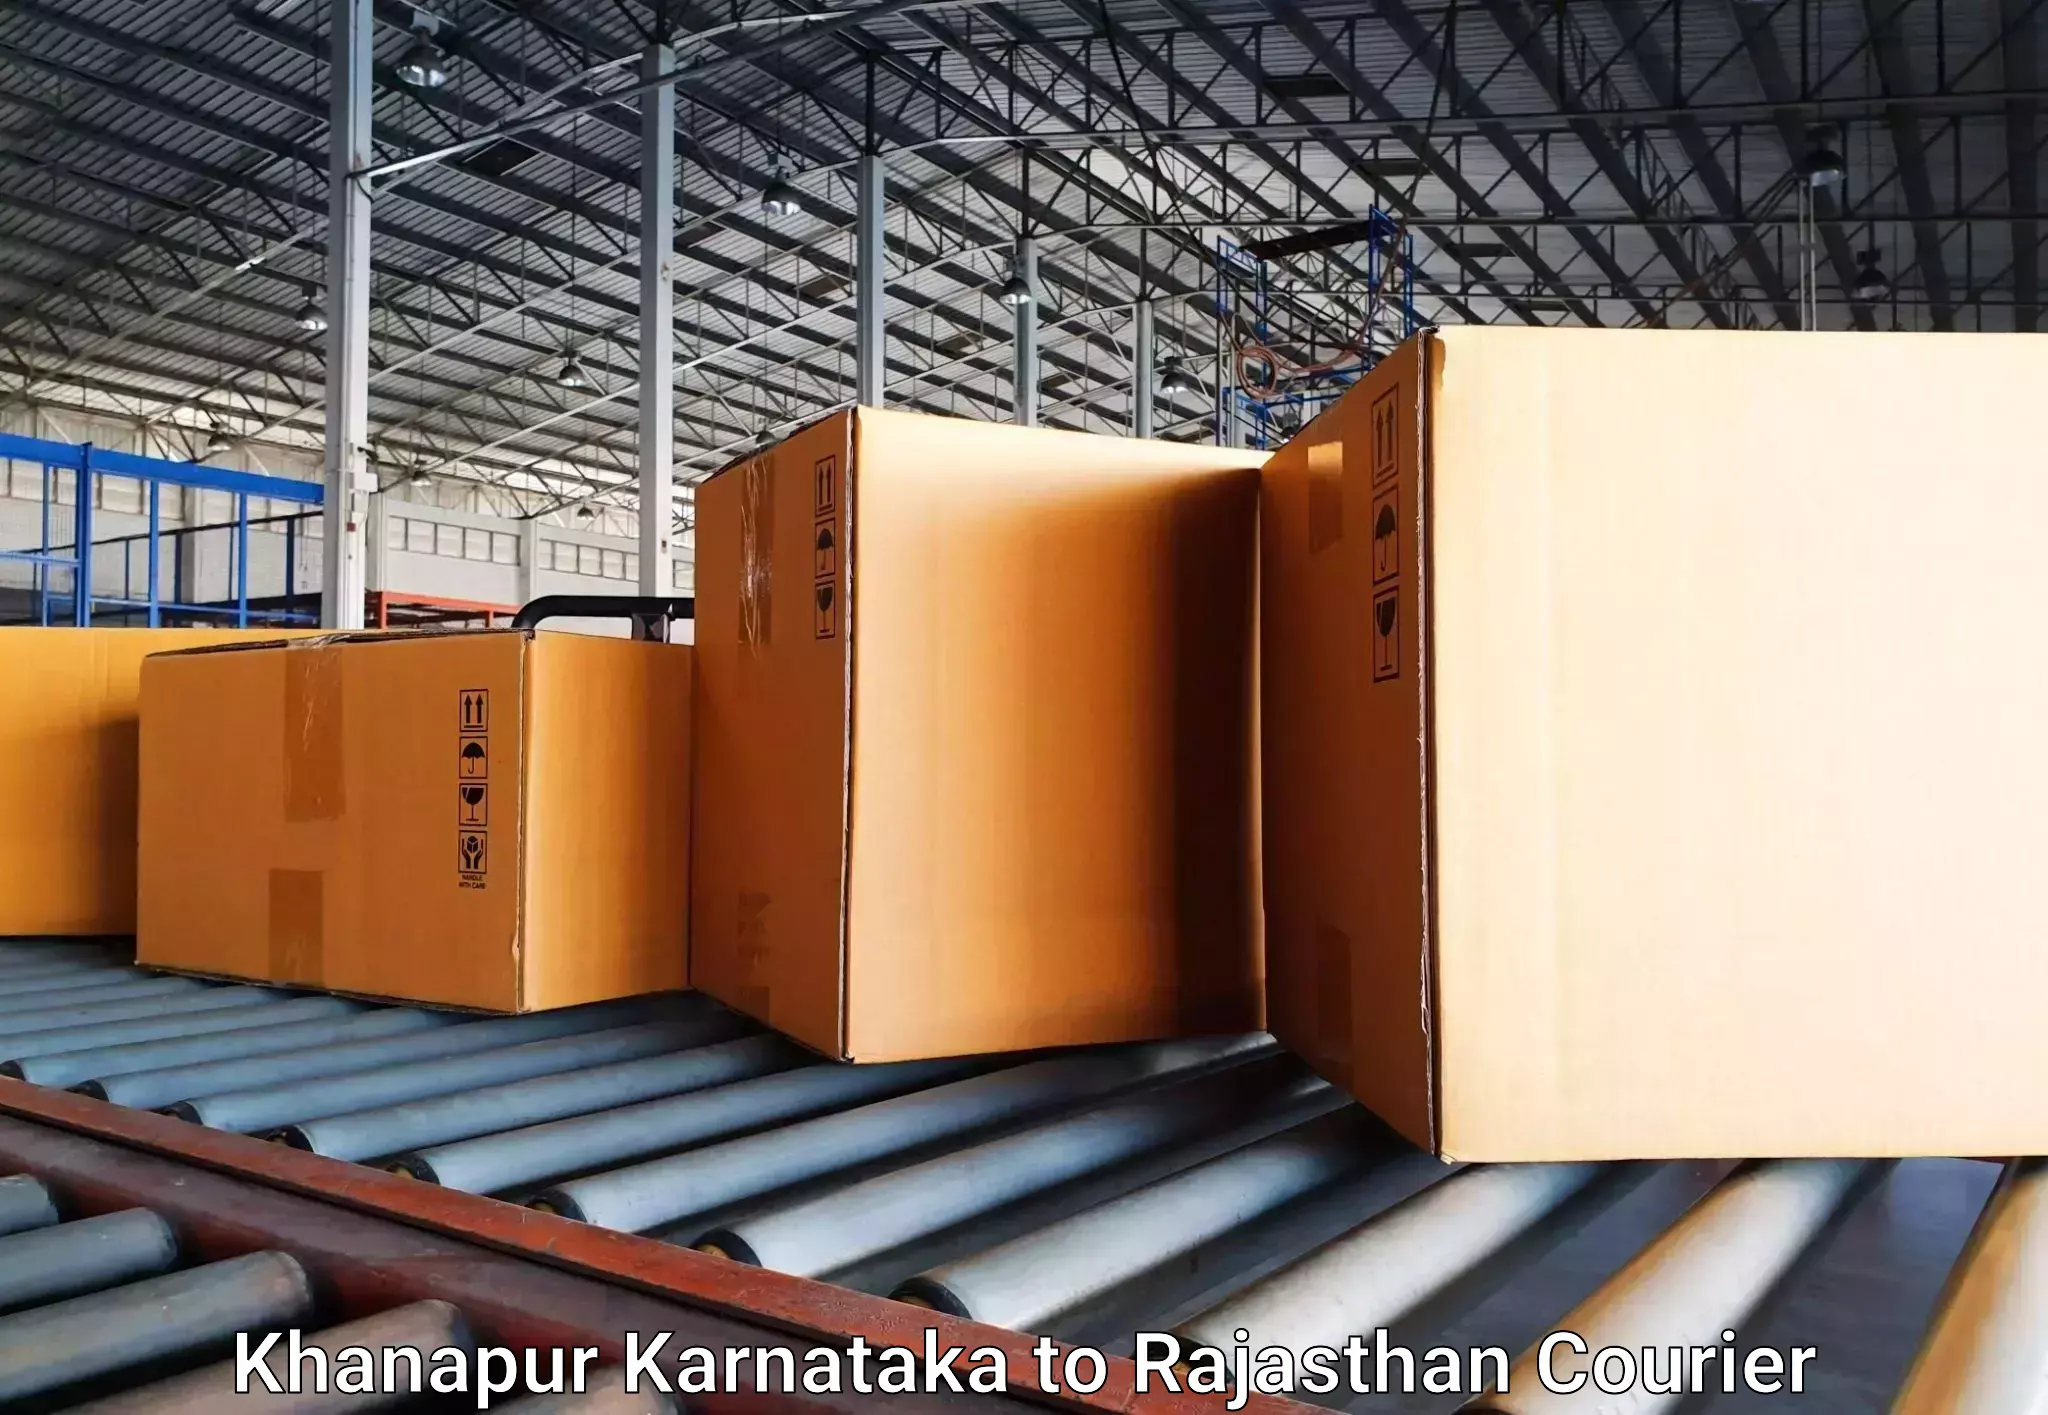 Luggage transport operations Khanapur Karnataka to Raisingh Nagar